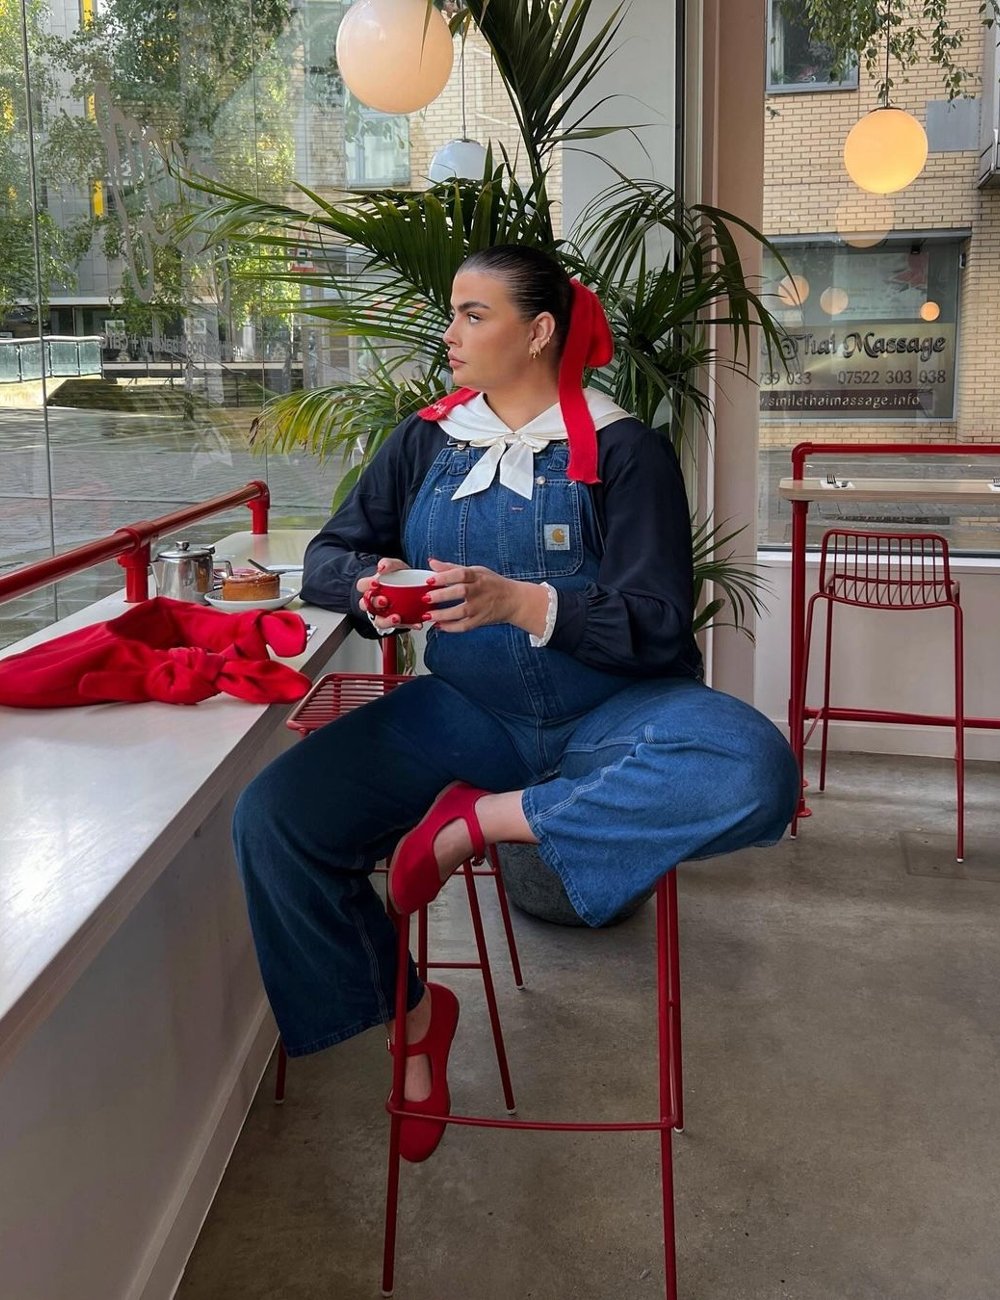 Pessoa sentada em uma cafeteria usando macacão jeans, camisa de manga longa preta com gola branca, e laço vermelho no cabelo. Sapatos coloridos vermelhos combinam com os detalhes da roupa. Look contemporâneo com toque retrô em ambiente moderno.